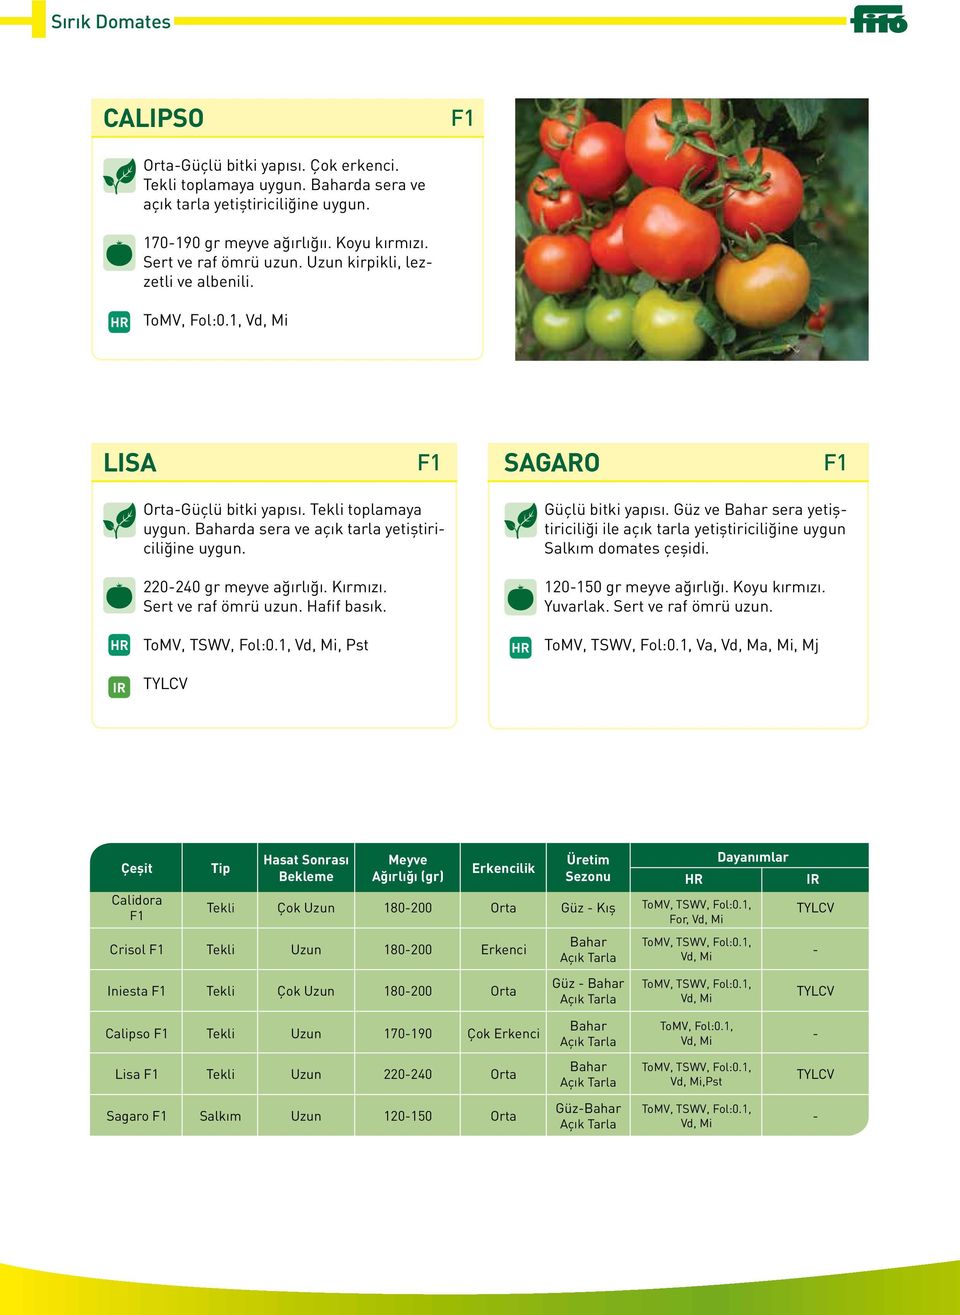 Güçlü bitki yapısı. Güz ve Bahar sera yetiştiriciliği ile açık tarla yetiştiriciliğine uygun Salkım domates çeşidi. 220-240 gr meyve ağırlığı. Kırmızı. Sert ve raf ömrü uzun. Hafif basık.